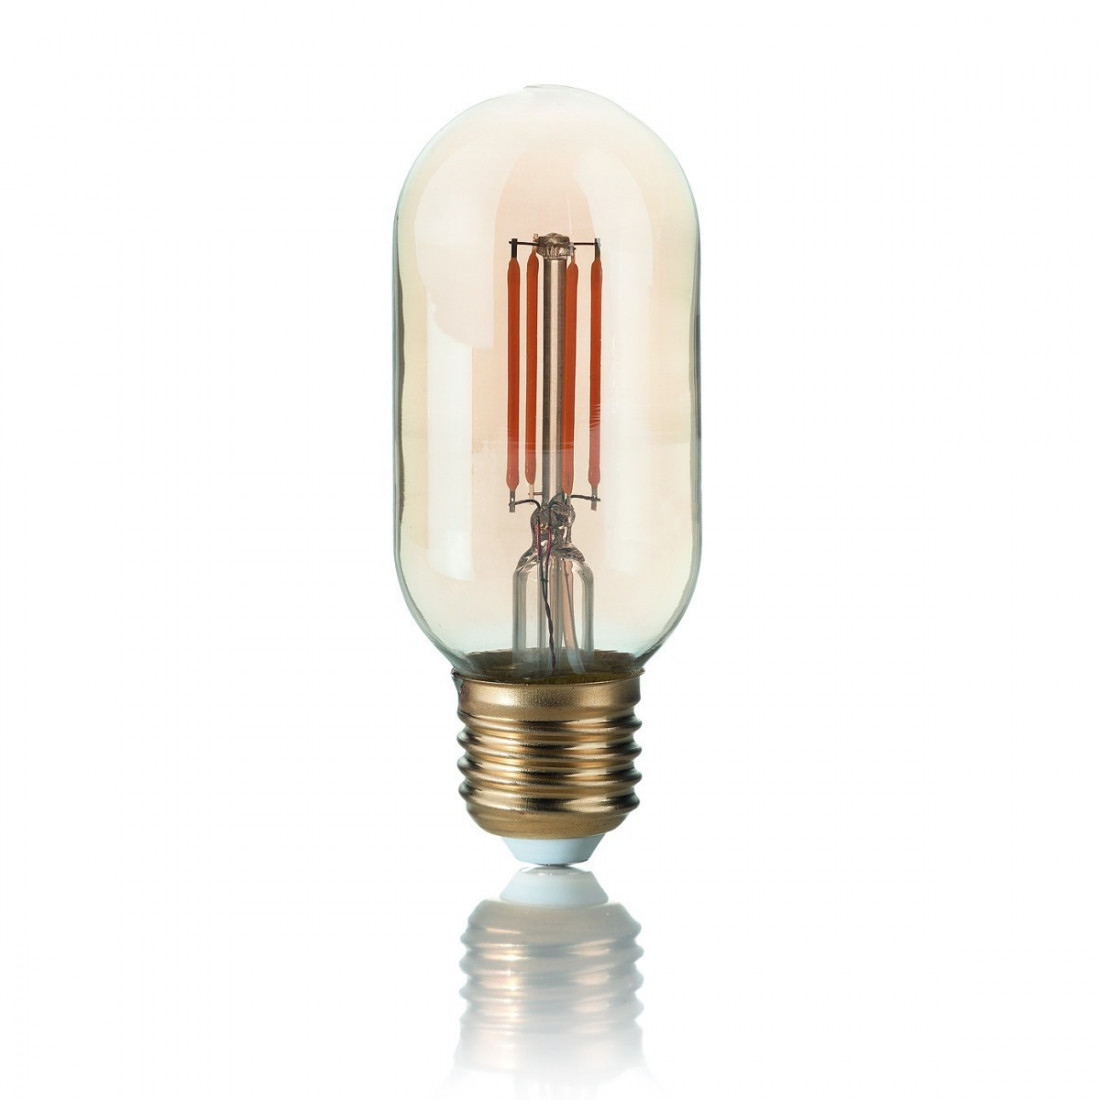 Lampadina vetro vintage ambra a cilindro e27 led. Luce caldissima.